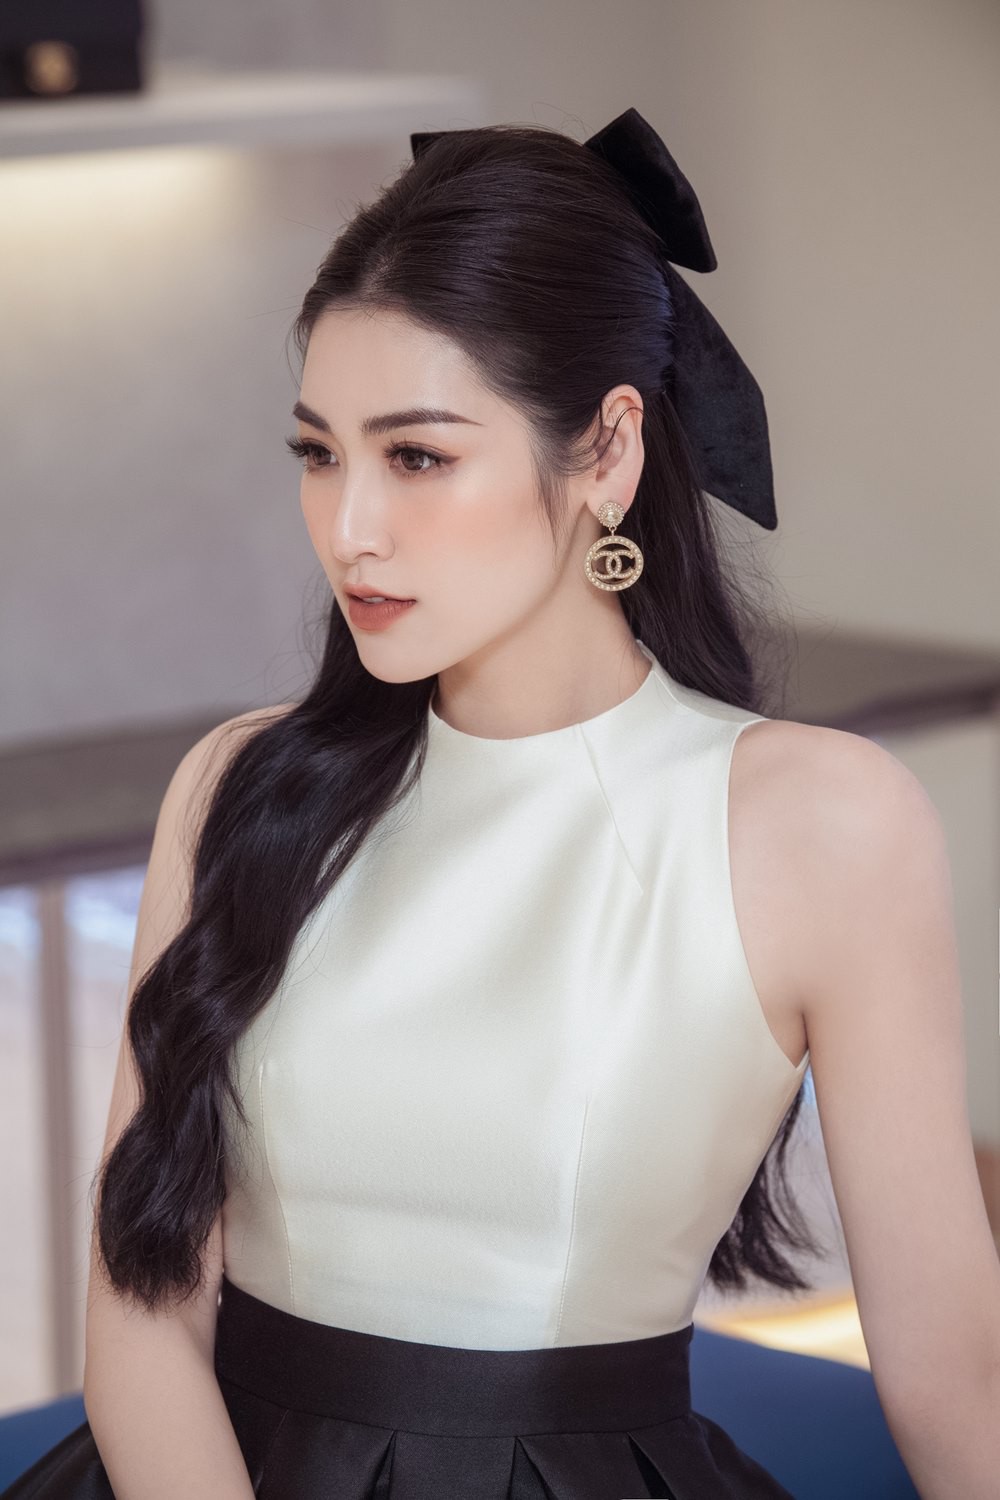 Top 5 Hoa hậu Việt Nam 2012: Đặng Thu Thảo xuất hiện là gây sốt, 1 người chuyển hướng làm ca sĩ - Ảnh 6.